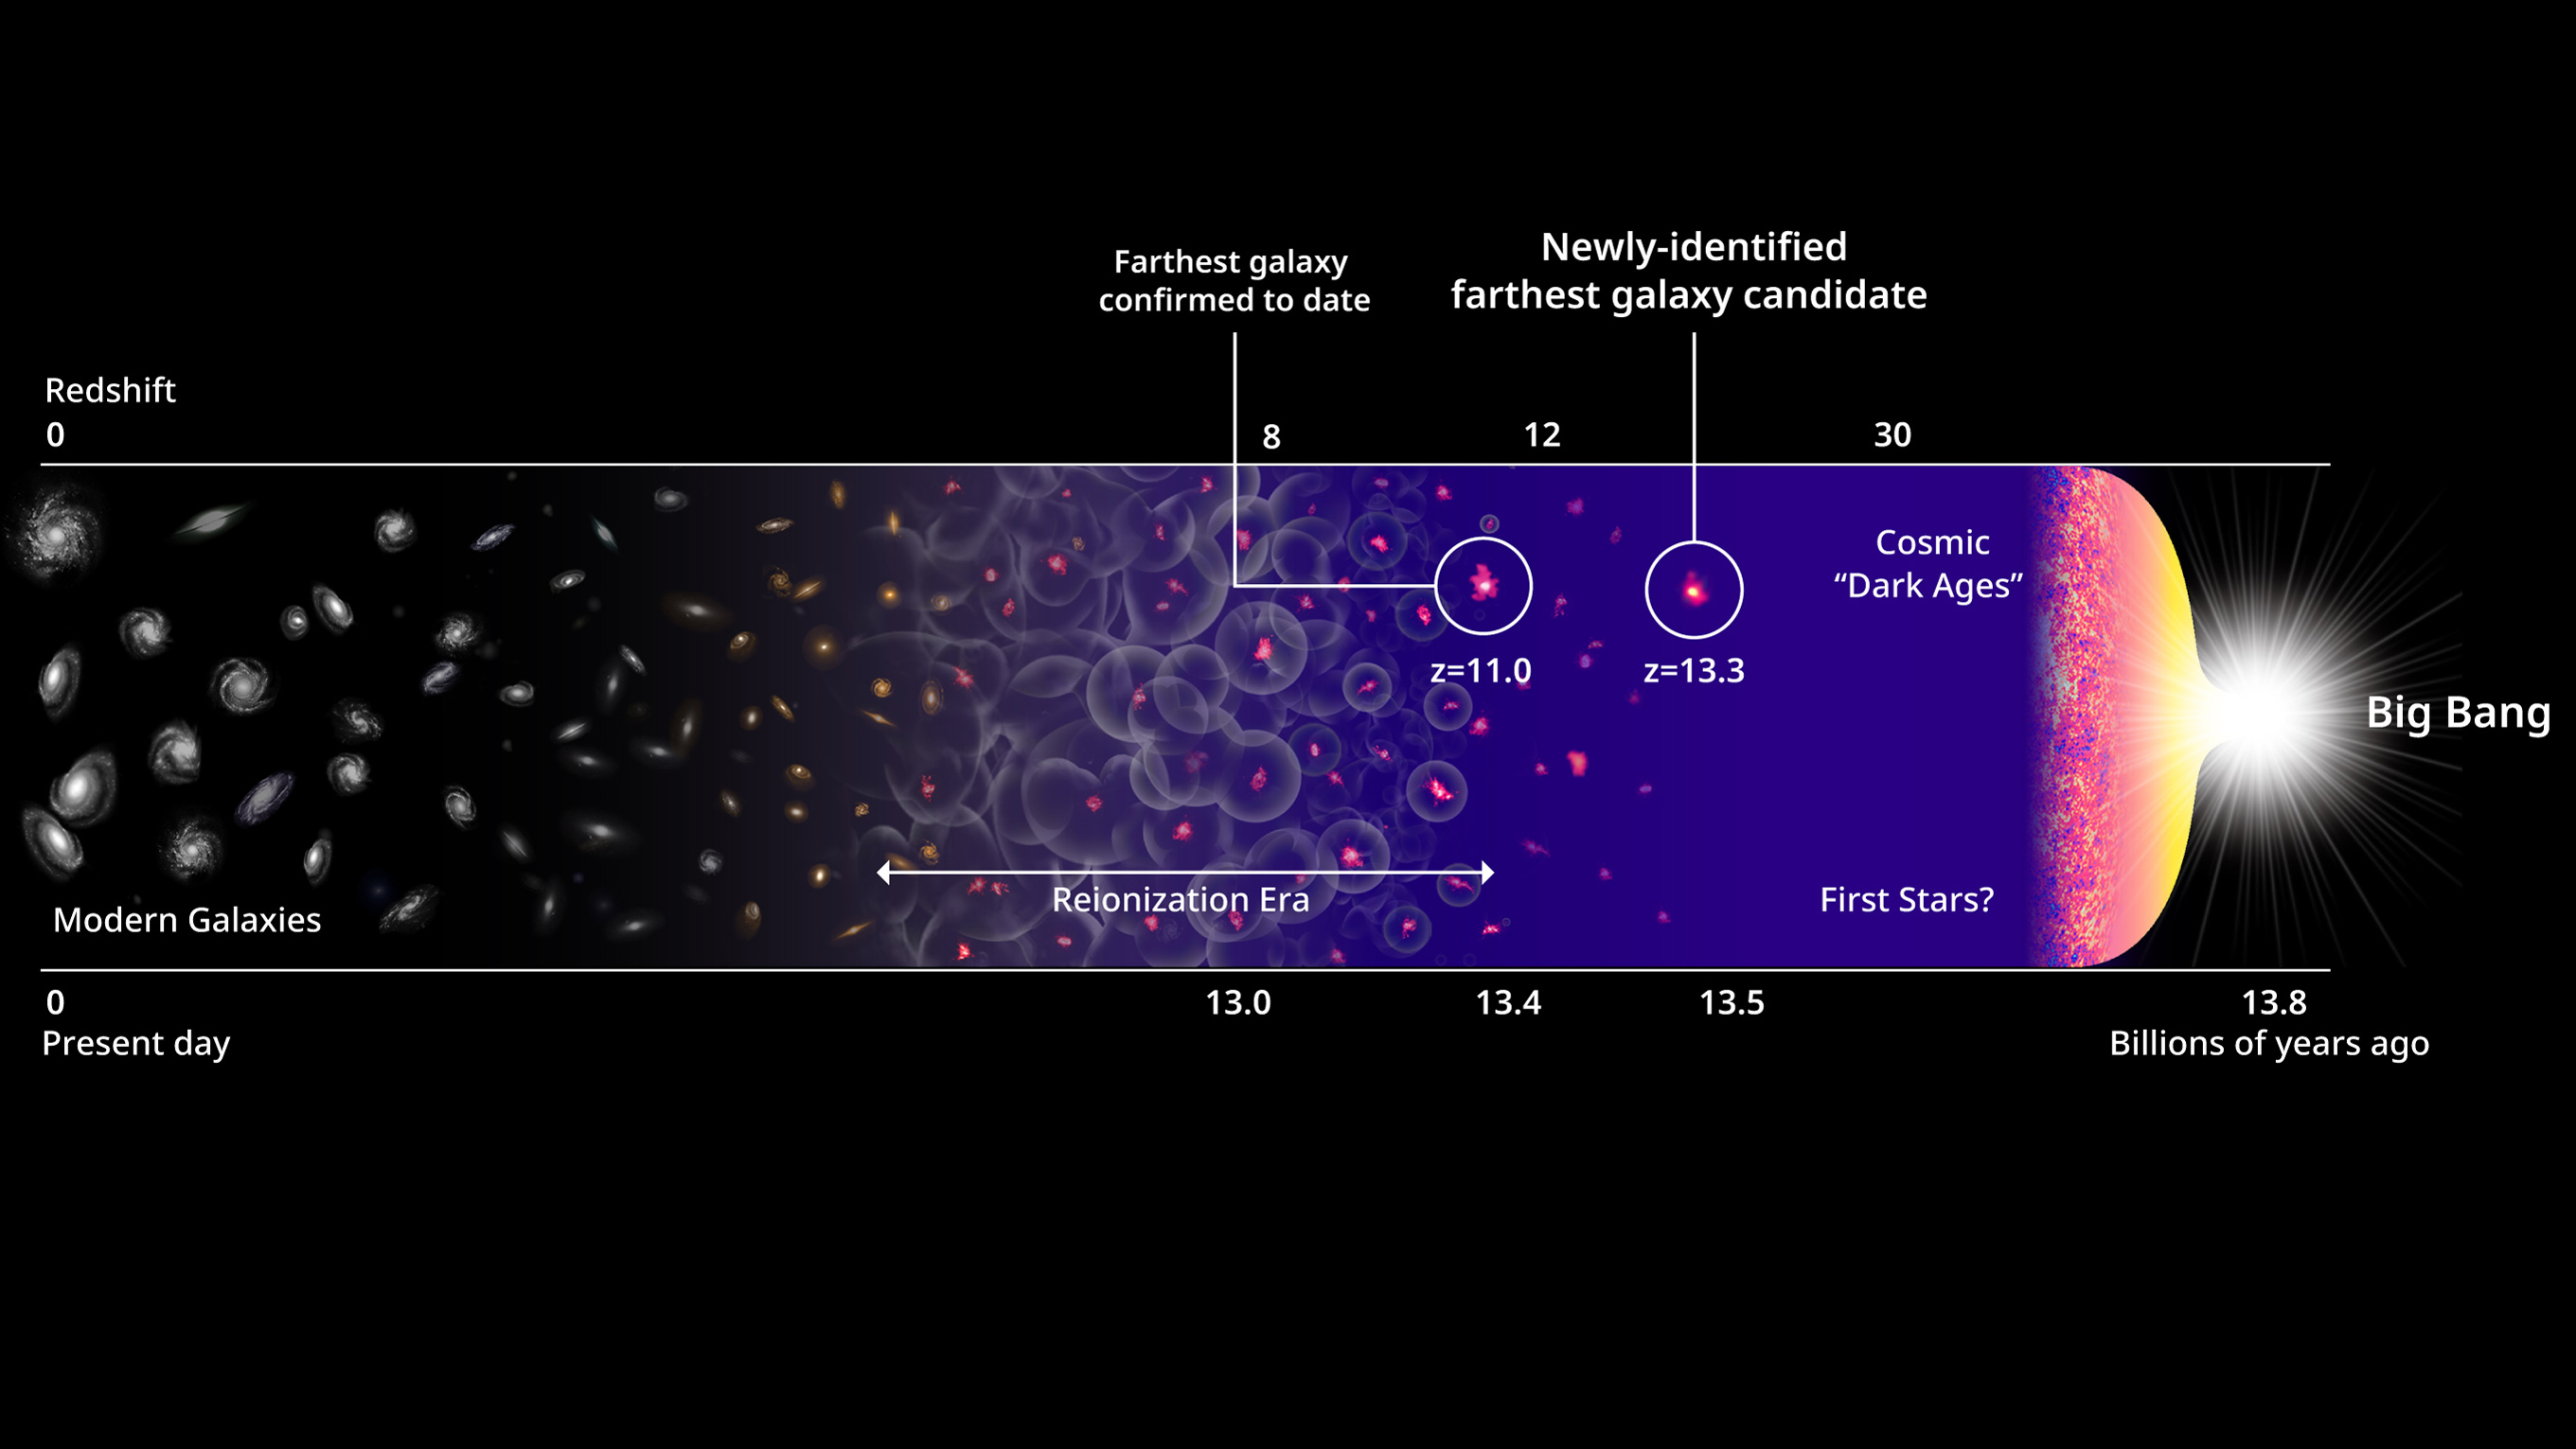 Les premières étoiles et galaxies se sont formées au cours des premières centaines de millions d'années après le Big Bang, comme le montre cette illustration de l'évolution de l'univers.